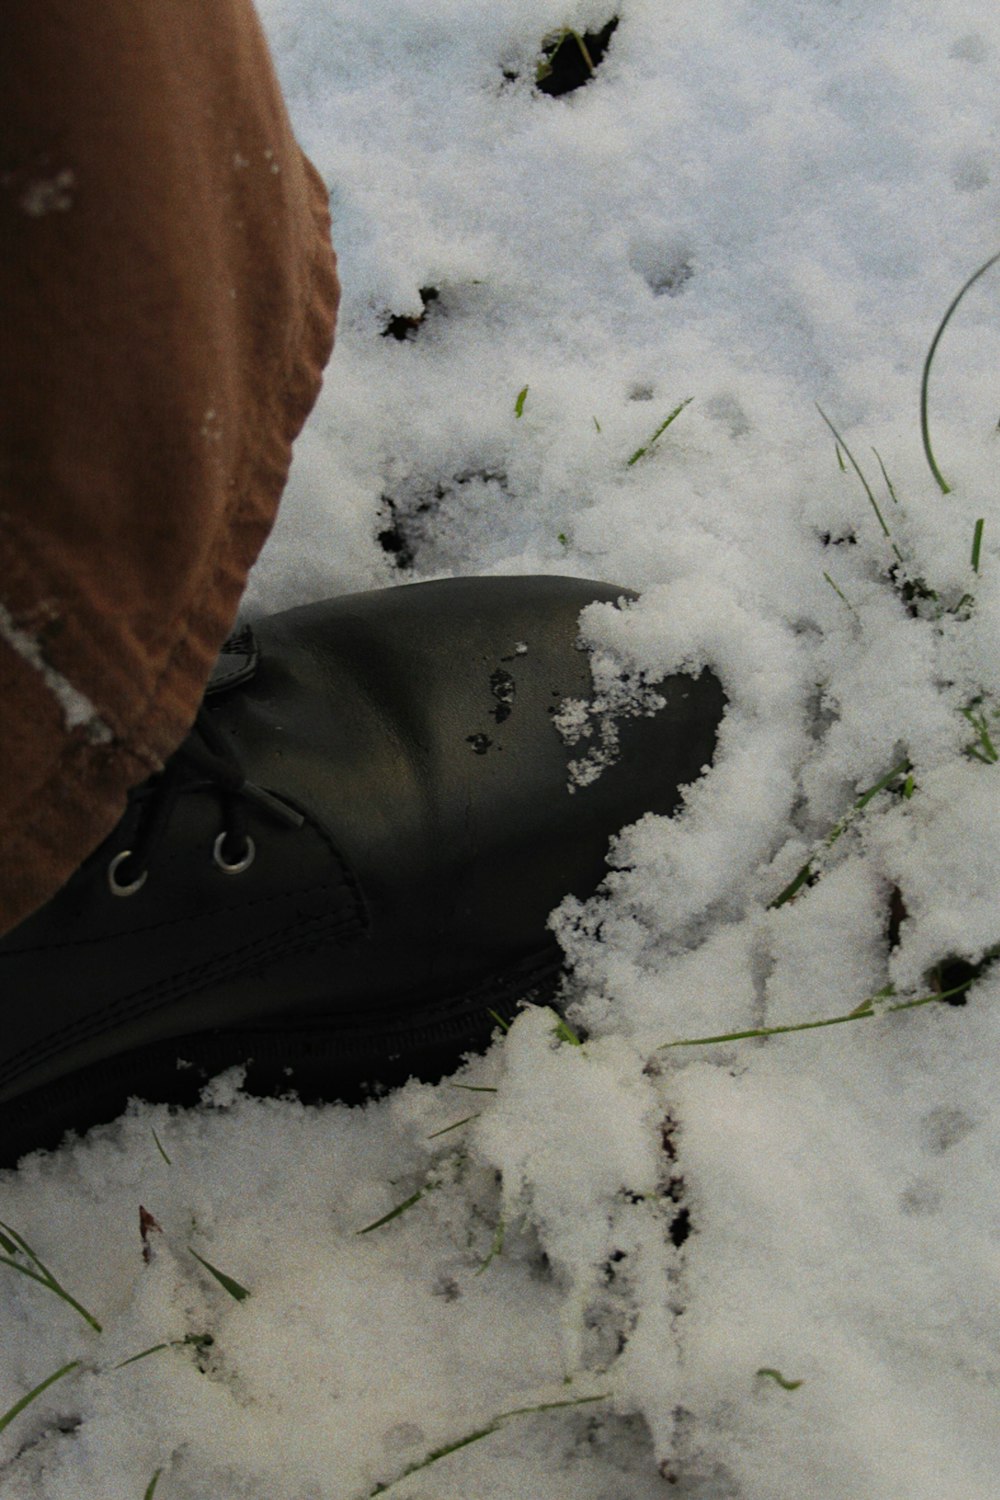 una persona parada en la nieve con botas negras